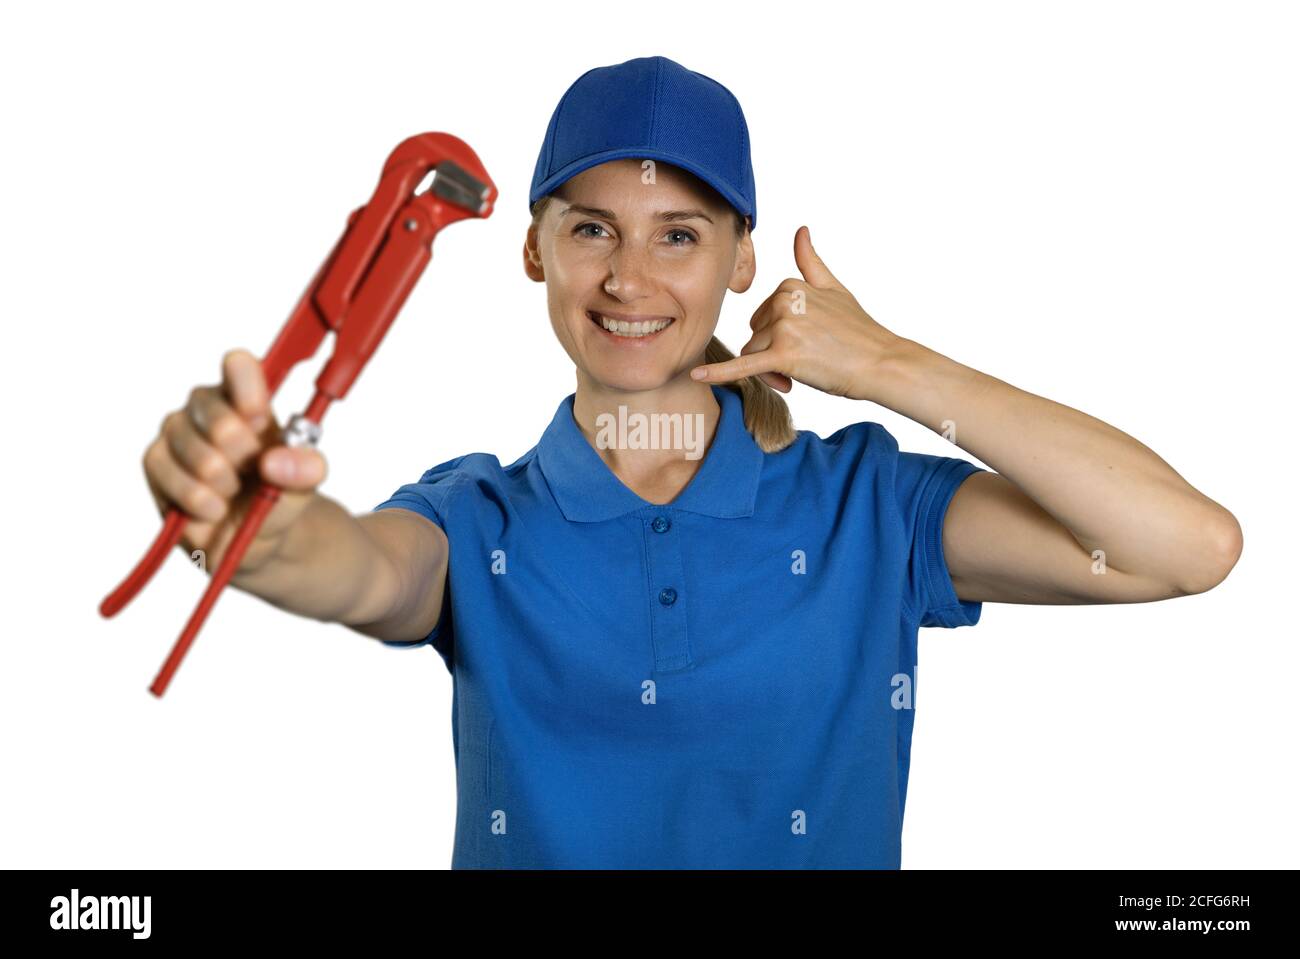 servizi di idraulica - idraulico femminile che indossa uniforme blu con chiave che mostra il gesto di chiamata del telefono. isolato su sfondo bianco Foto Stock